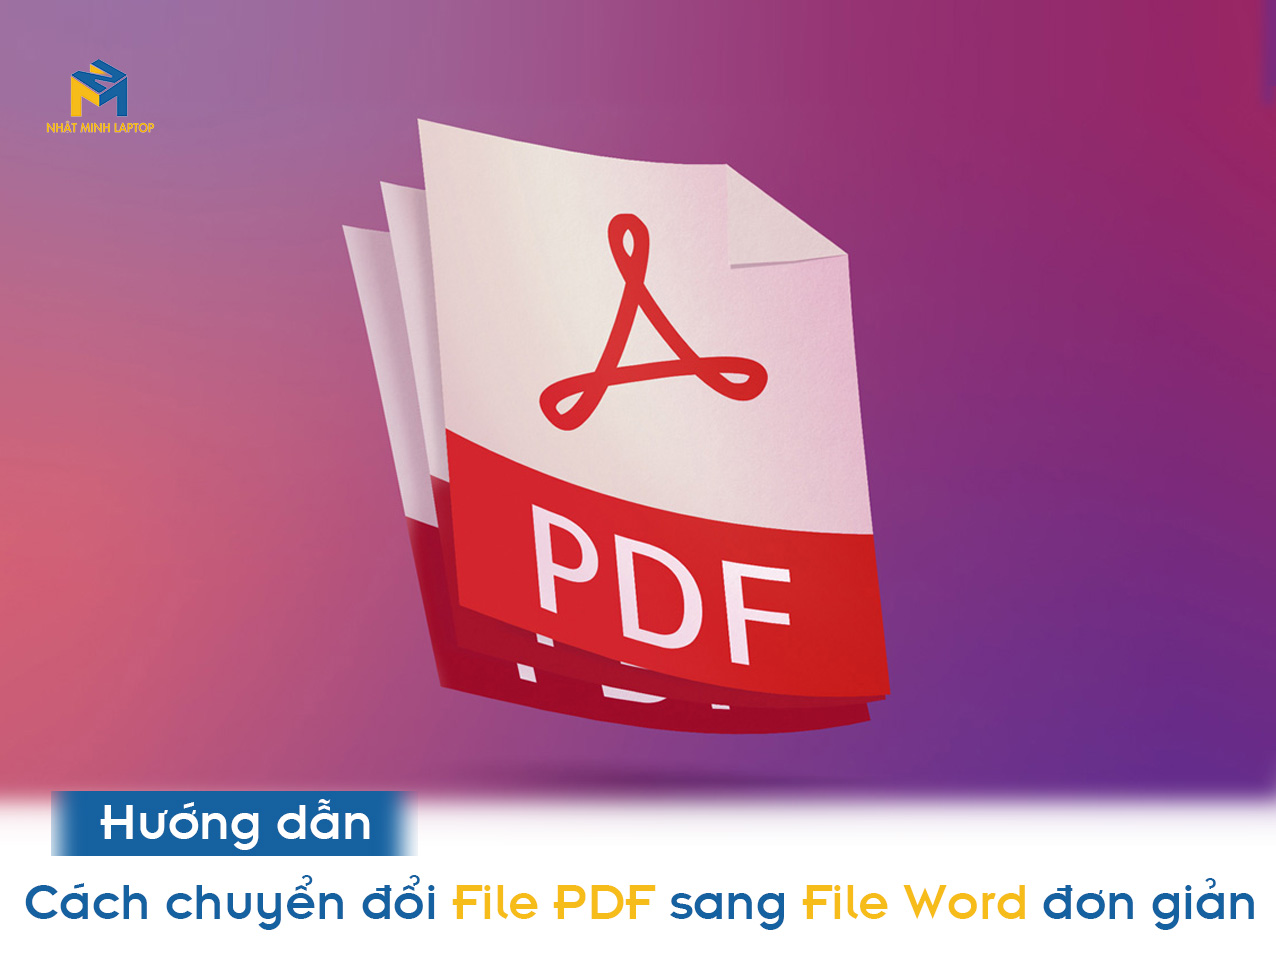 Hướng dẫn cách chuyển đổi File PDF sang File Word đơn giản